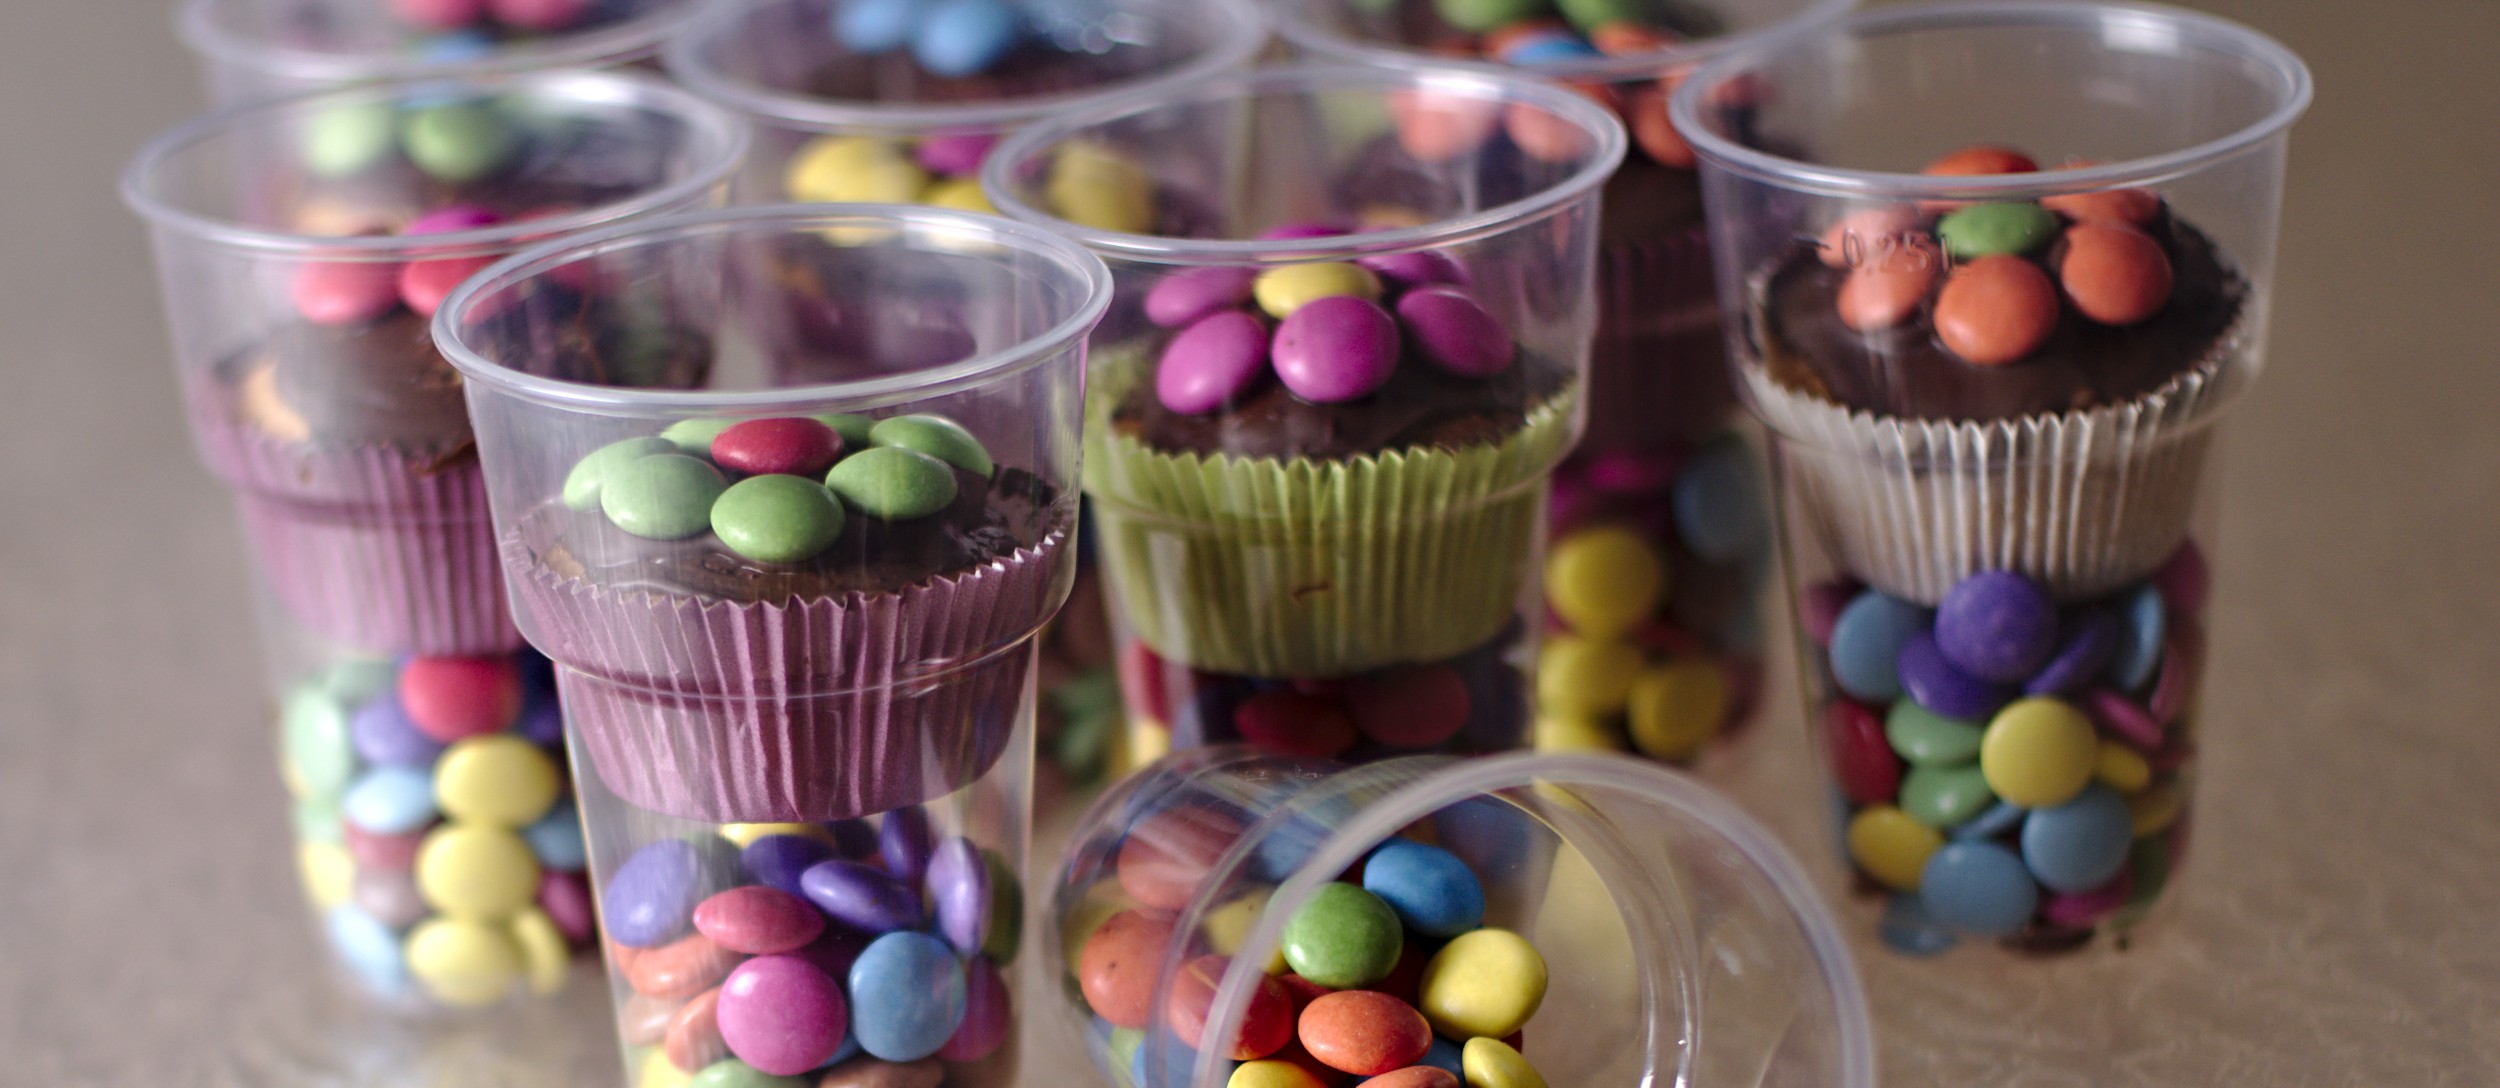 Dinkel-Muffins mit Schokoladentropfen! Eine leckere Idee zum Kindergeburtstag